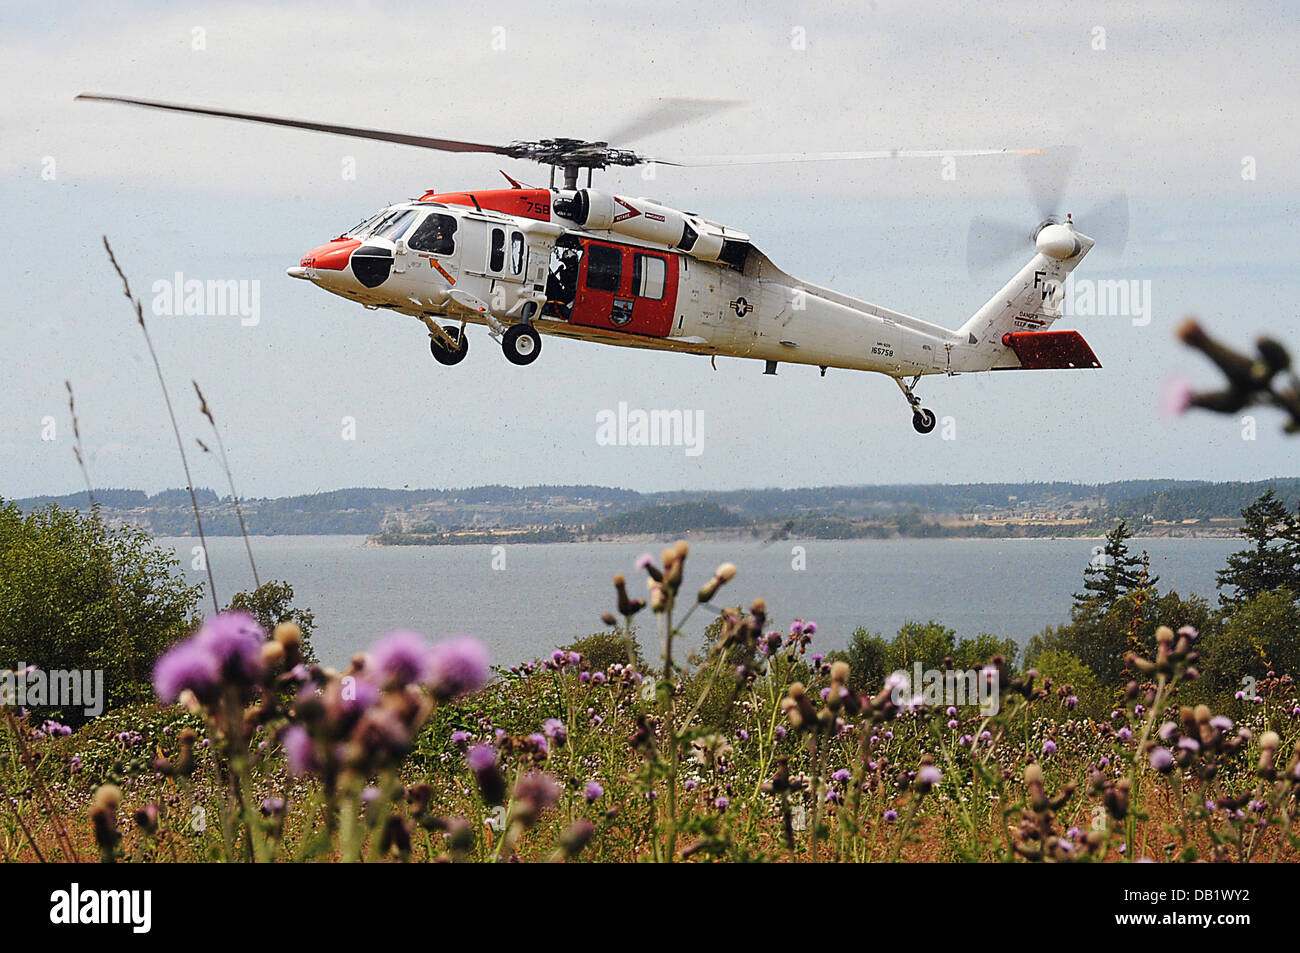 Matrosen zugewiesen Naval Air Station Whidbey Island Such- und Rettungseinsätze (SAR) Einheit steigt in einem MH-60 Sea Hawk-Hubschrauber während einer Suche und Rettung Bewertung. Die SAR-Bewertung profitiert das Kommando und die lokale Gemeinschaft durch Auswertung von SAR-Techniken eine Stockfoto